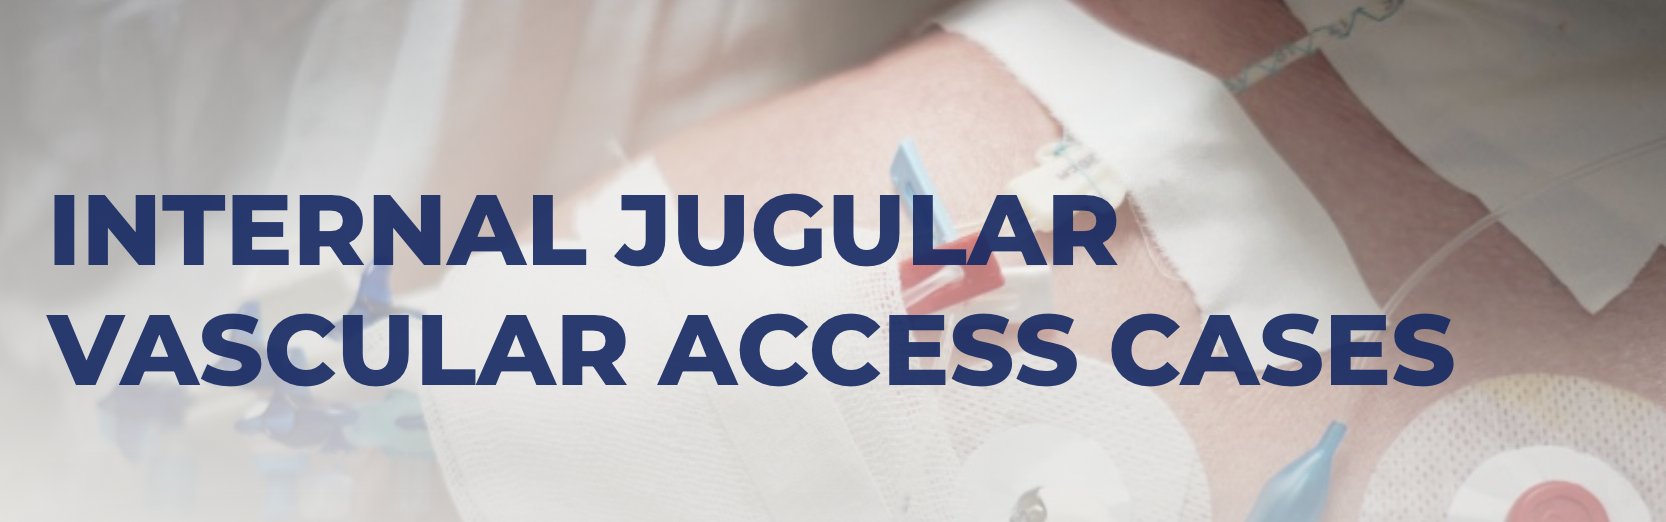 Internal Jugular Vascular Access Cases